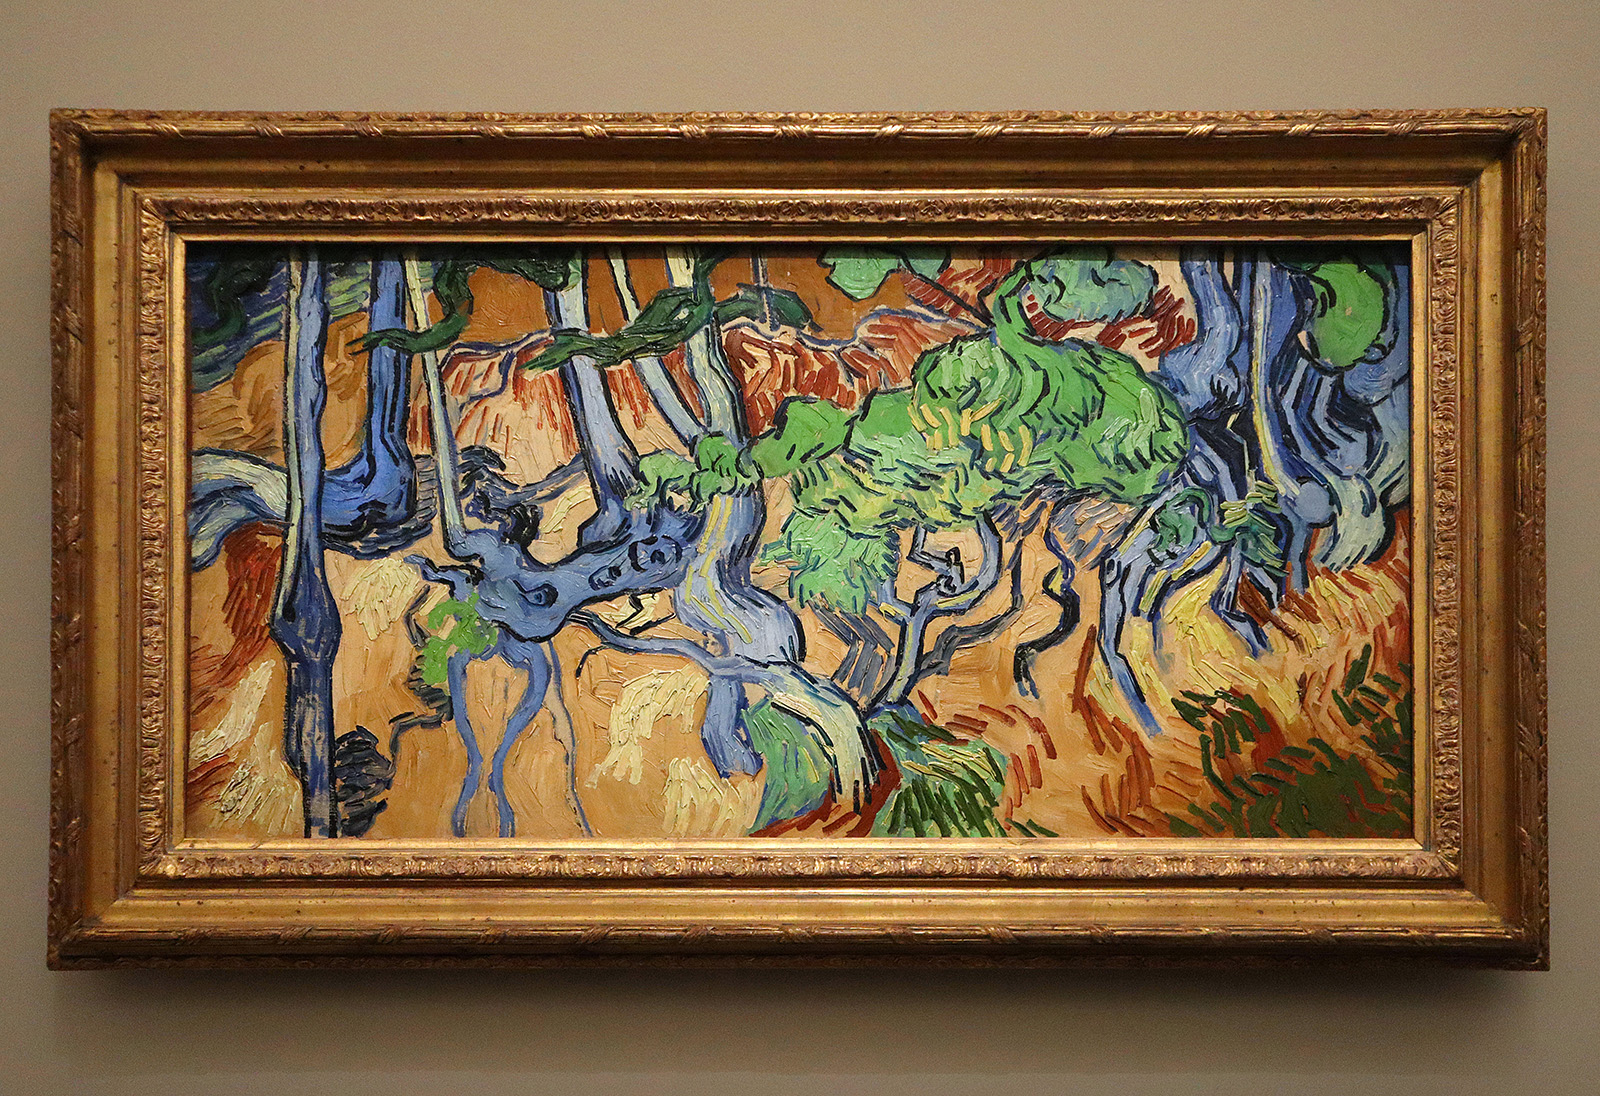 Vincent van Gogh, Racines d’arbres</p>
<p>Photographie © Raymond Martinez